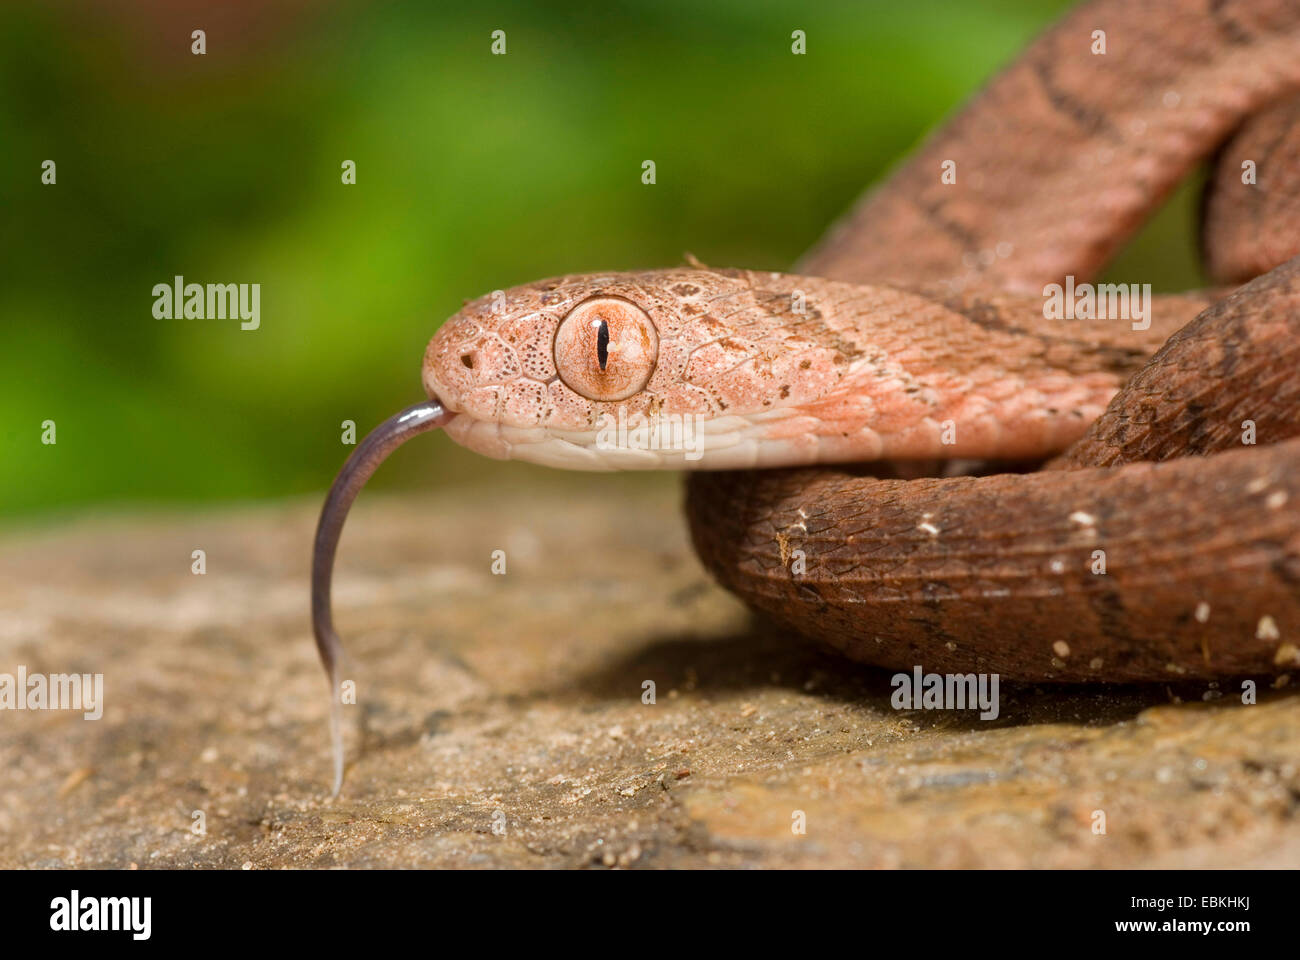 egg-eating snake, African egg-eating snake (Dasypeltis scabra), portrait, flicking Stock Photo